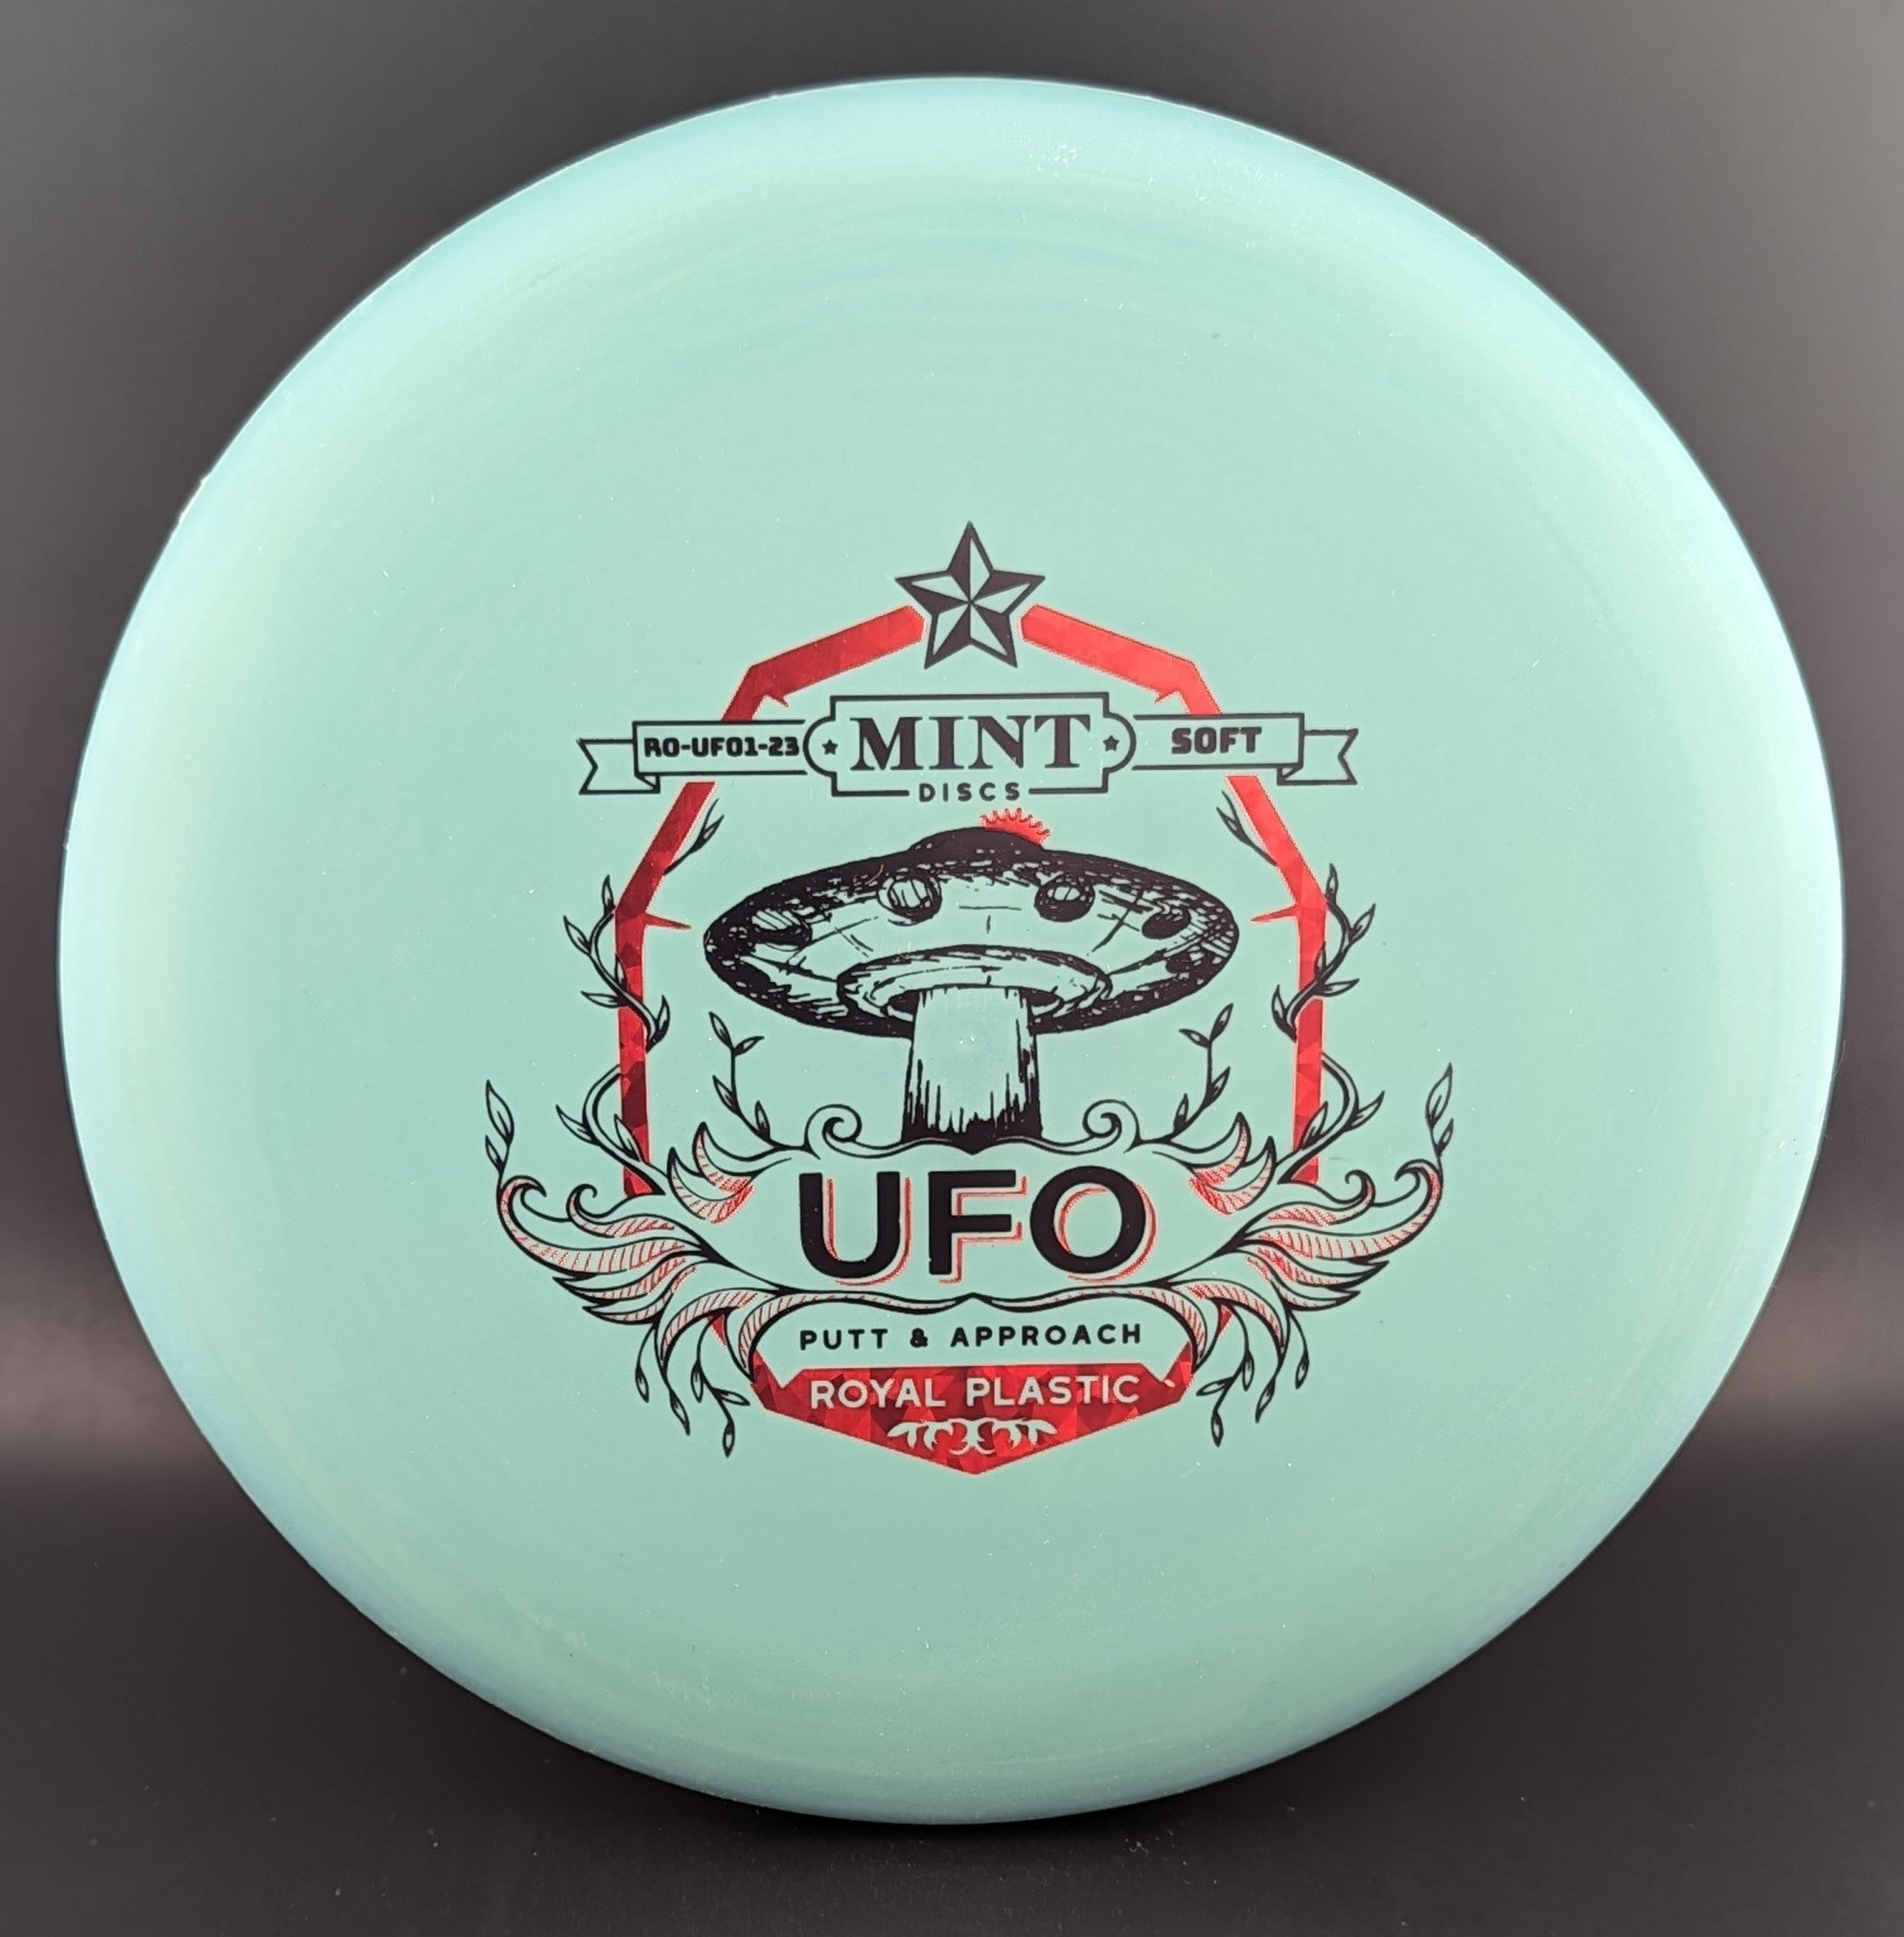 Mint Discs Royal UFO Soft - 0